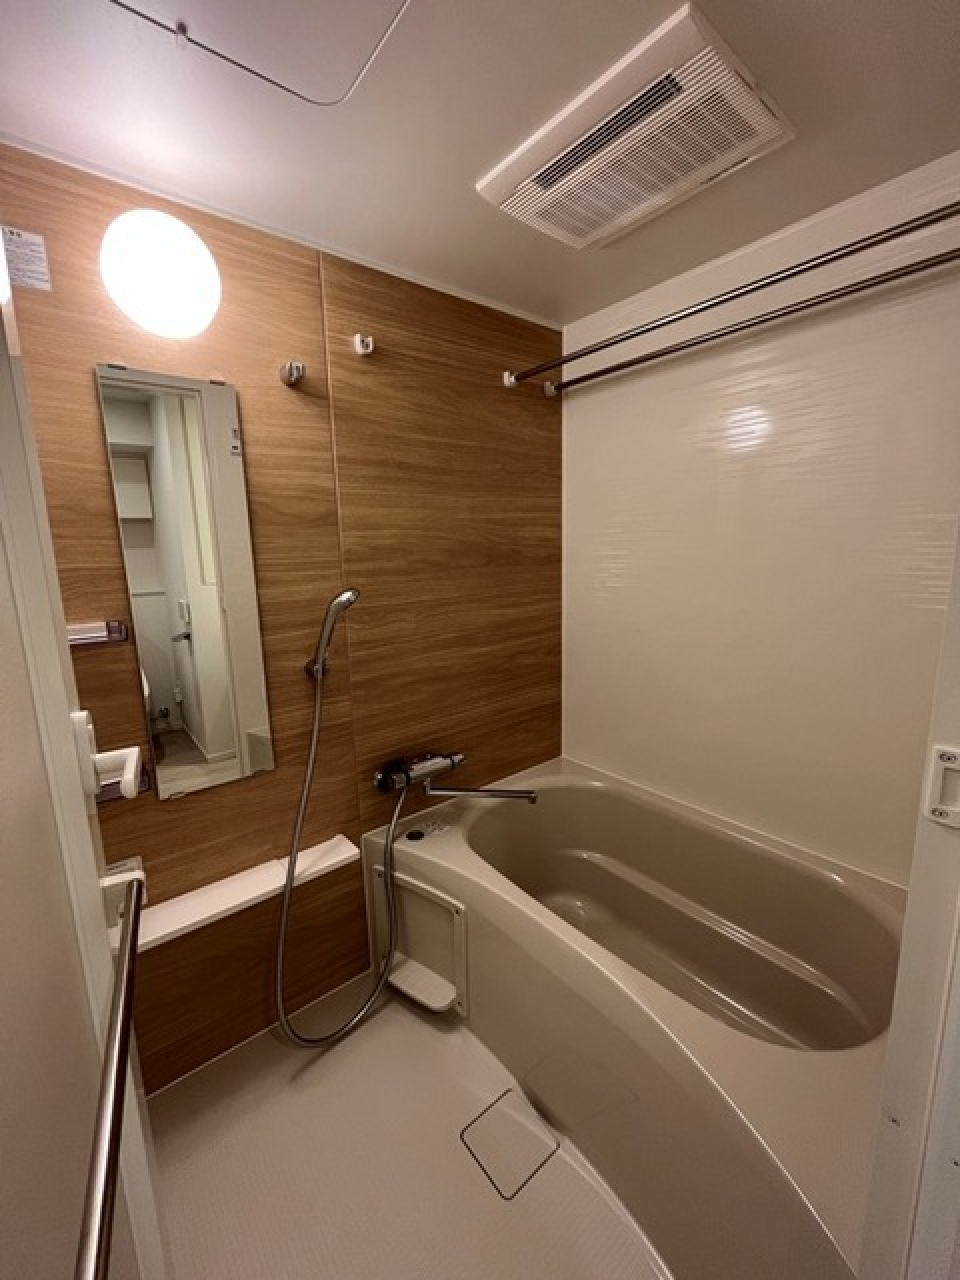 落ち着いたブラウンのパネルが導入された浴室です。※写真は同タイプ住戸です。